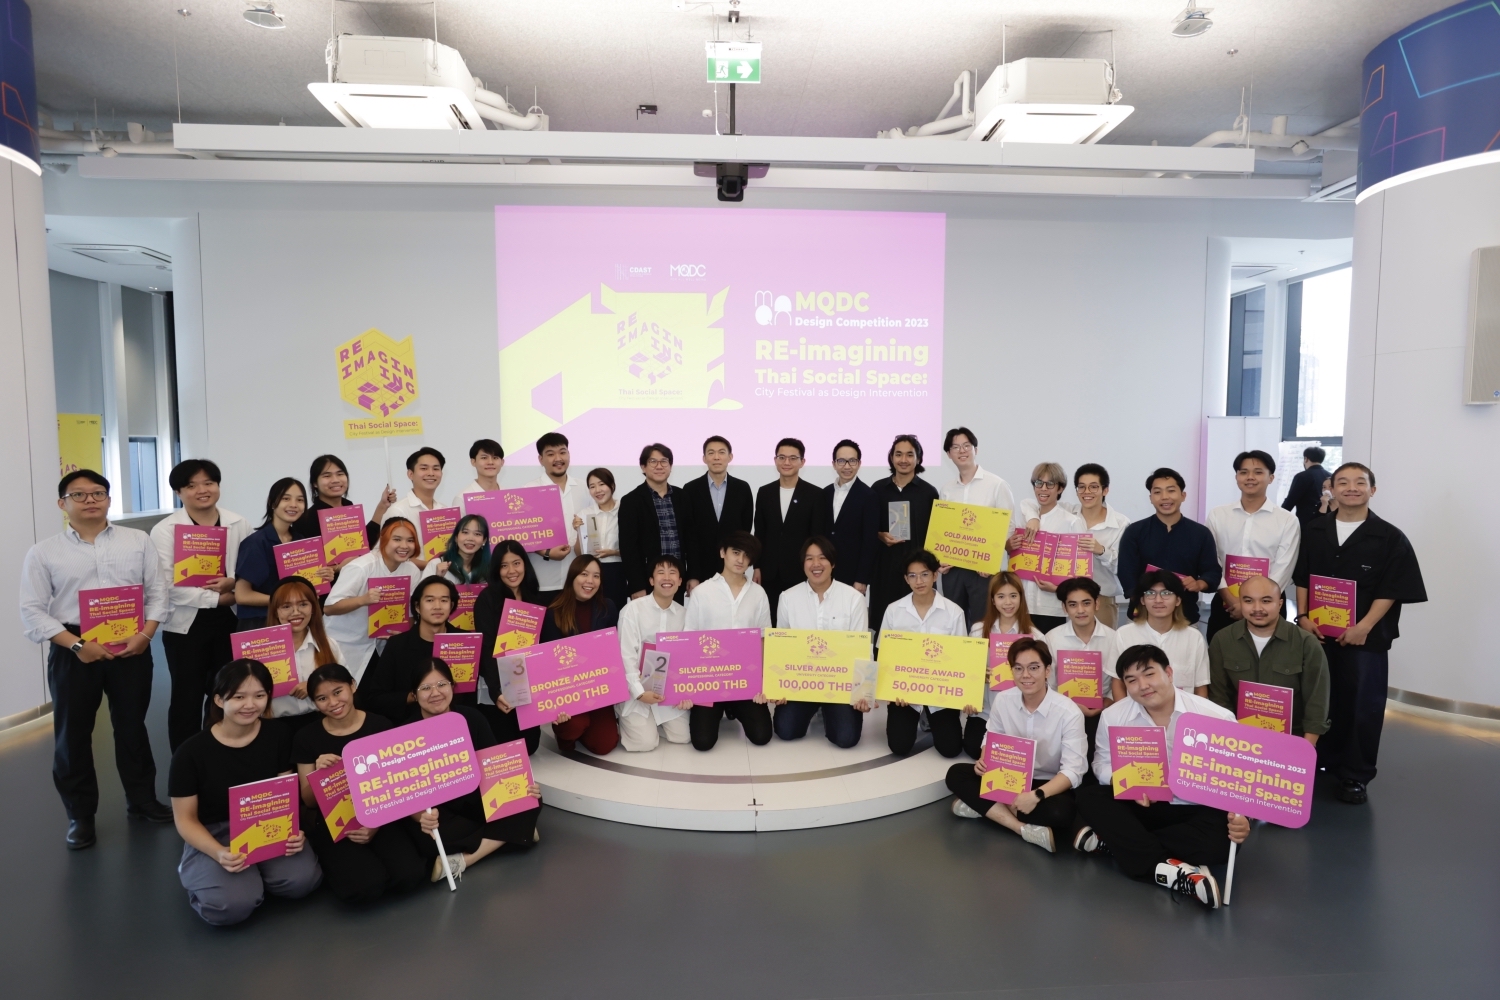 โชว์เคสผลงานผู้ชนะการประกวดแบบสุดยิ่งใหญ่แห่งปี MQDC Design Competition 2023 – RE-imagining Thai Social Space: City Festival as Design Intervention